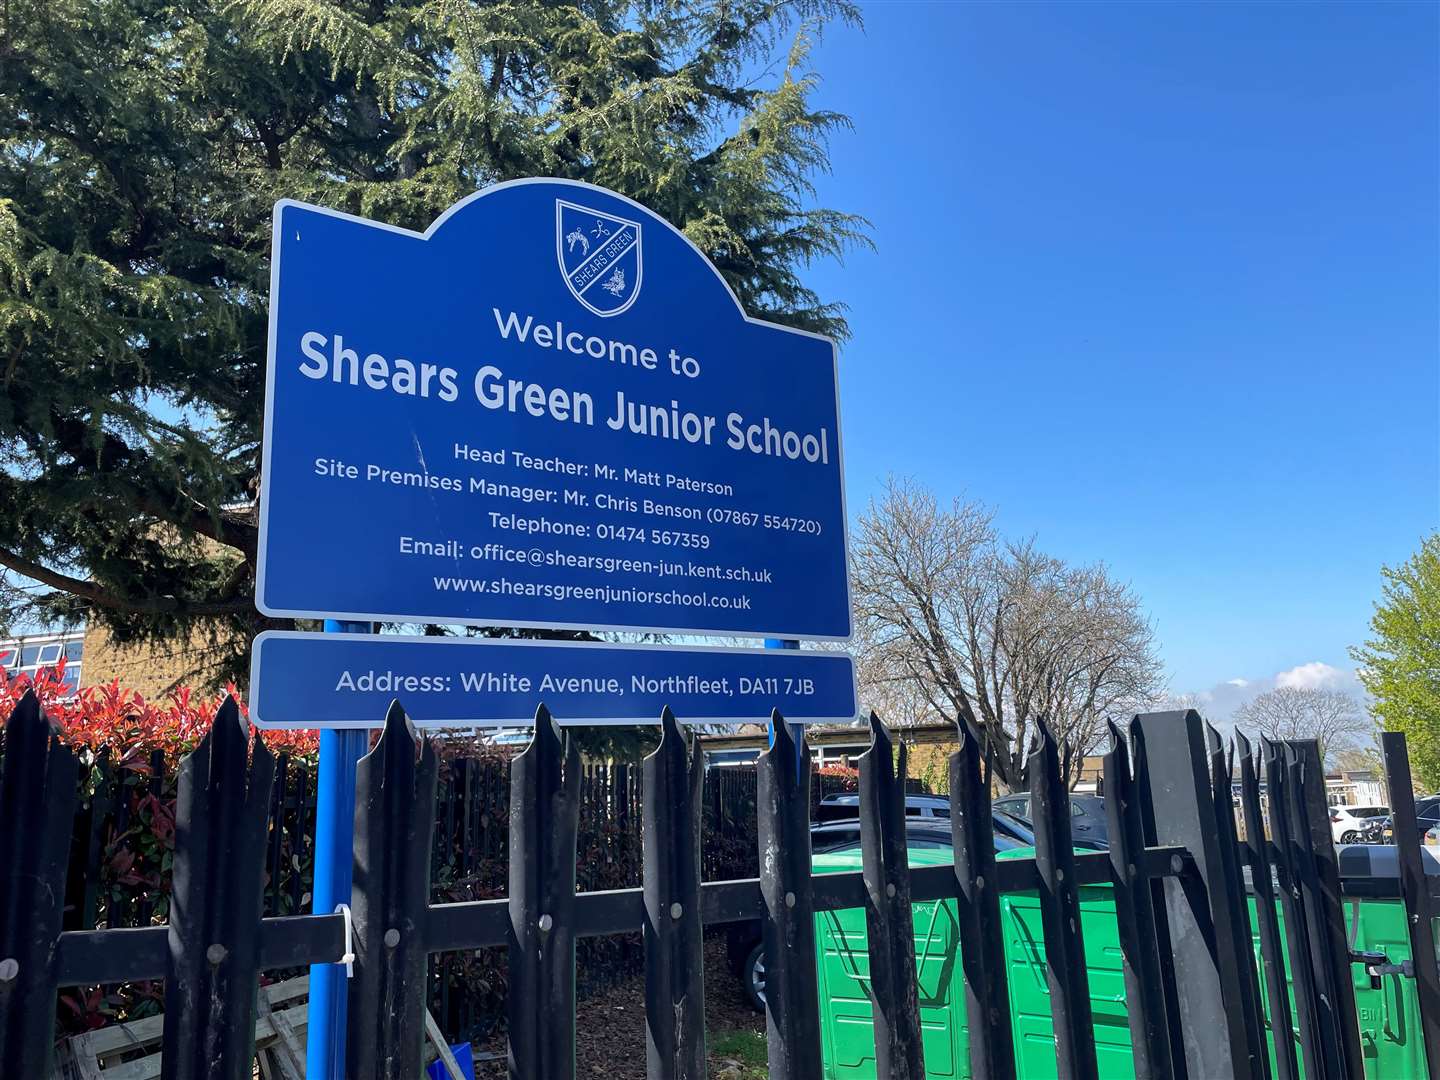 Shears Green Junior School, in White Avenue, Northfleet